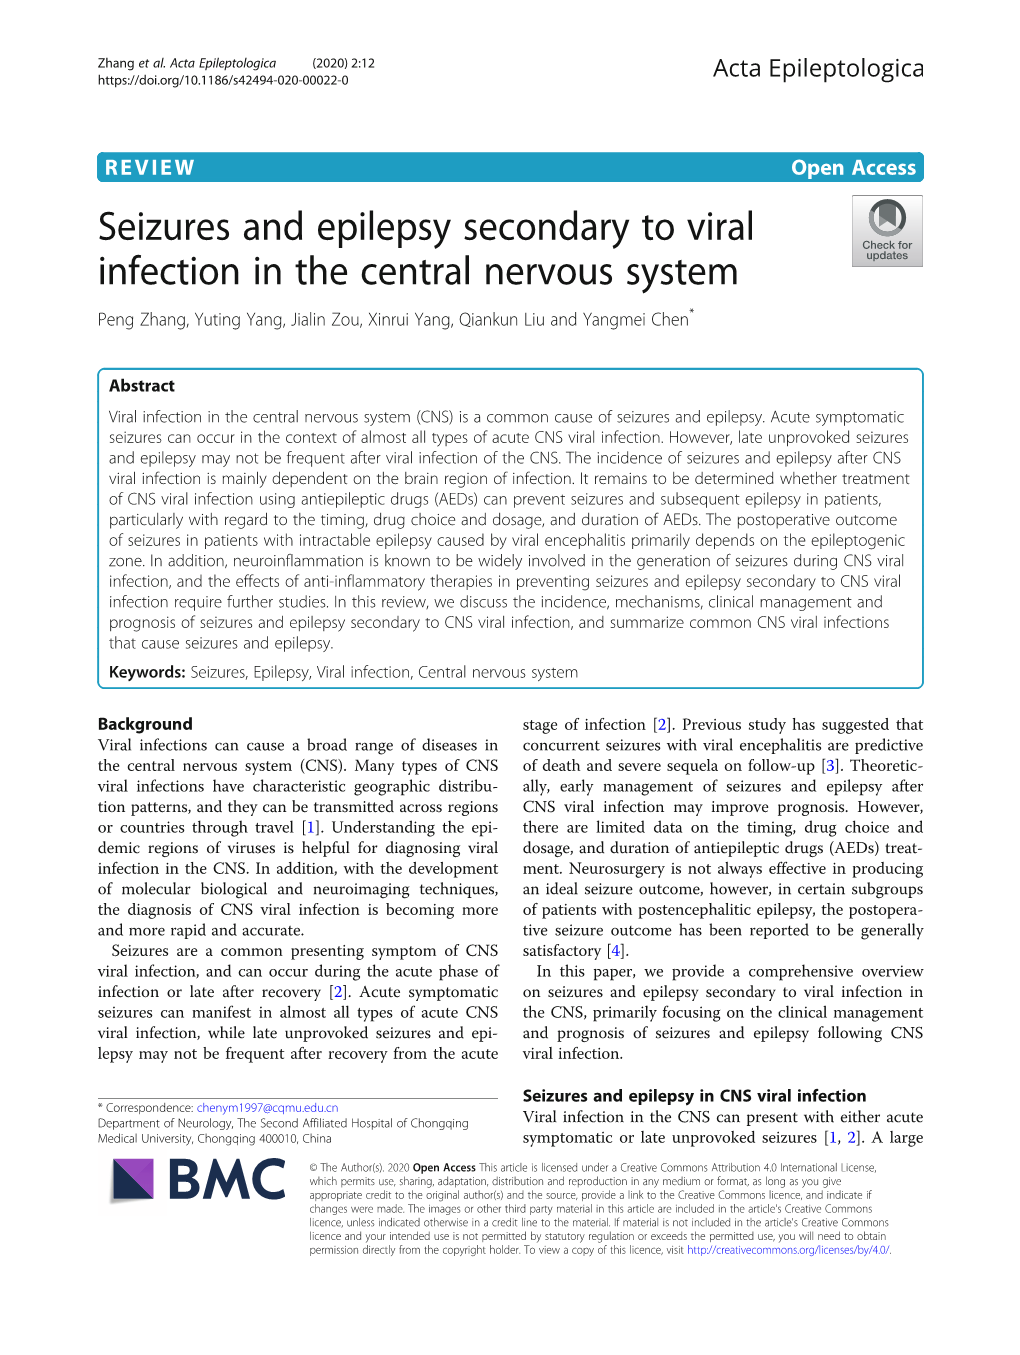 Seizures and Epilepsy Secondary to Viral Infection in the Central Nervous System Peng Zhang, Yuting Yang, Jialin Zou, Xinrui Yang, Qiankun Liu and Yangmei Chen*